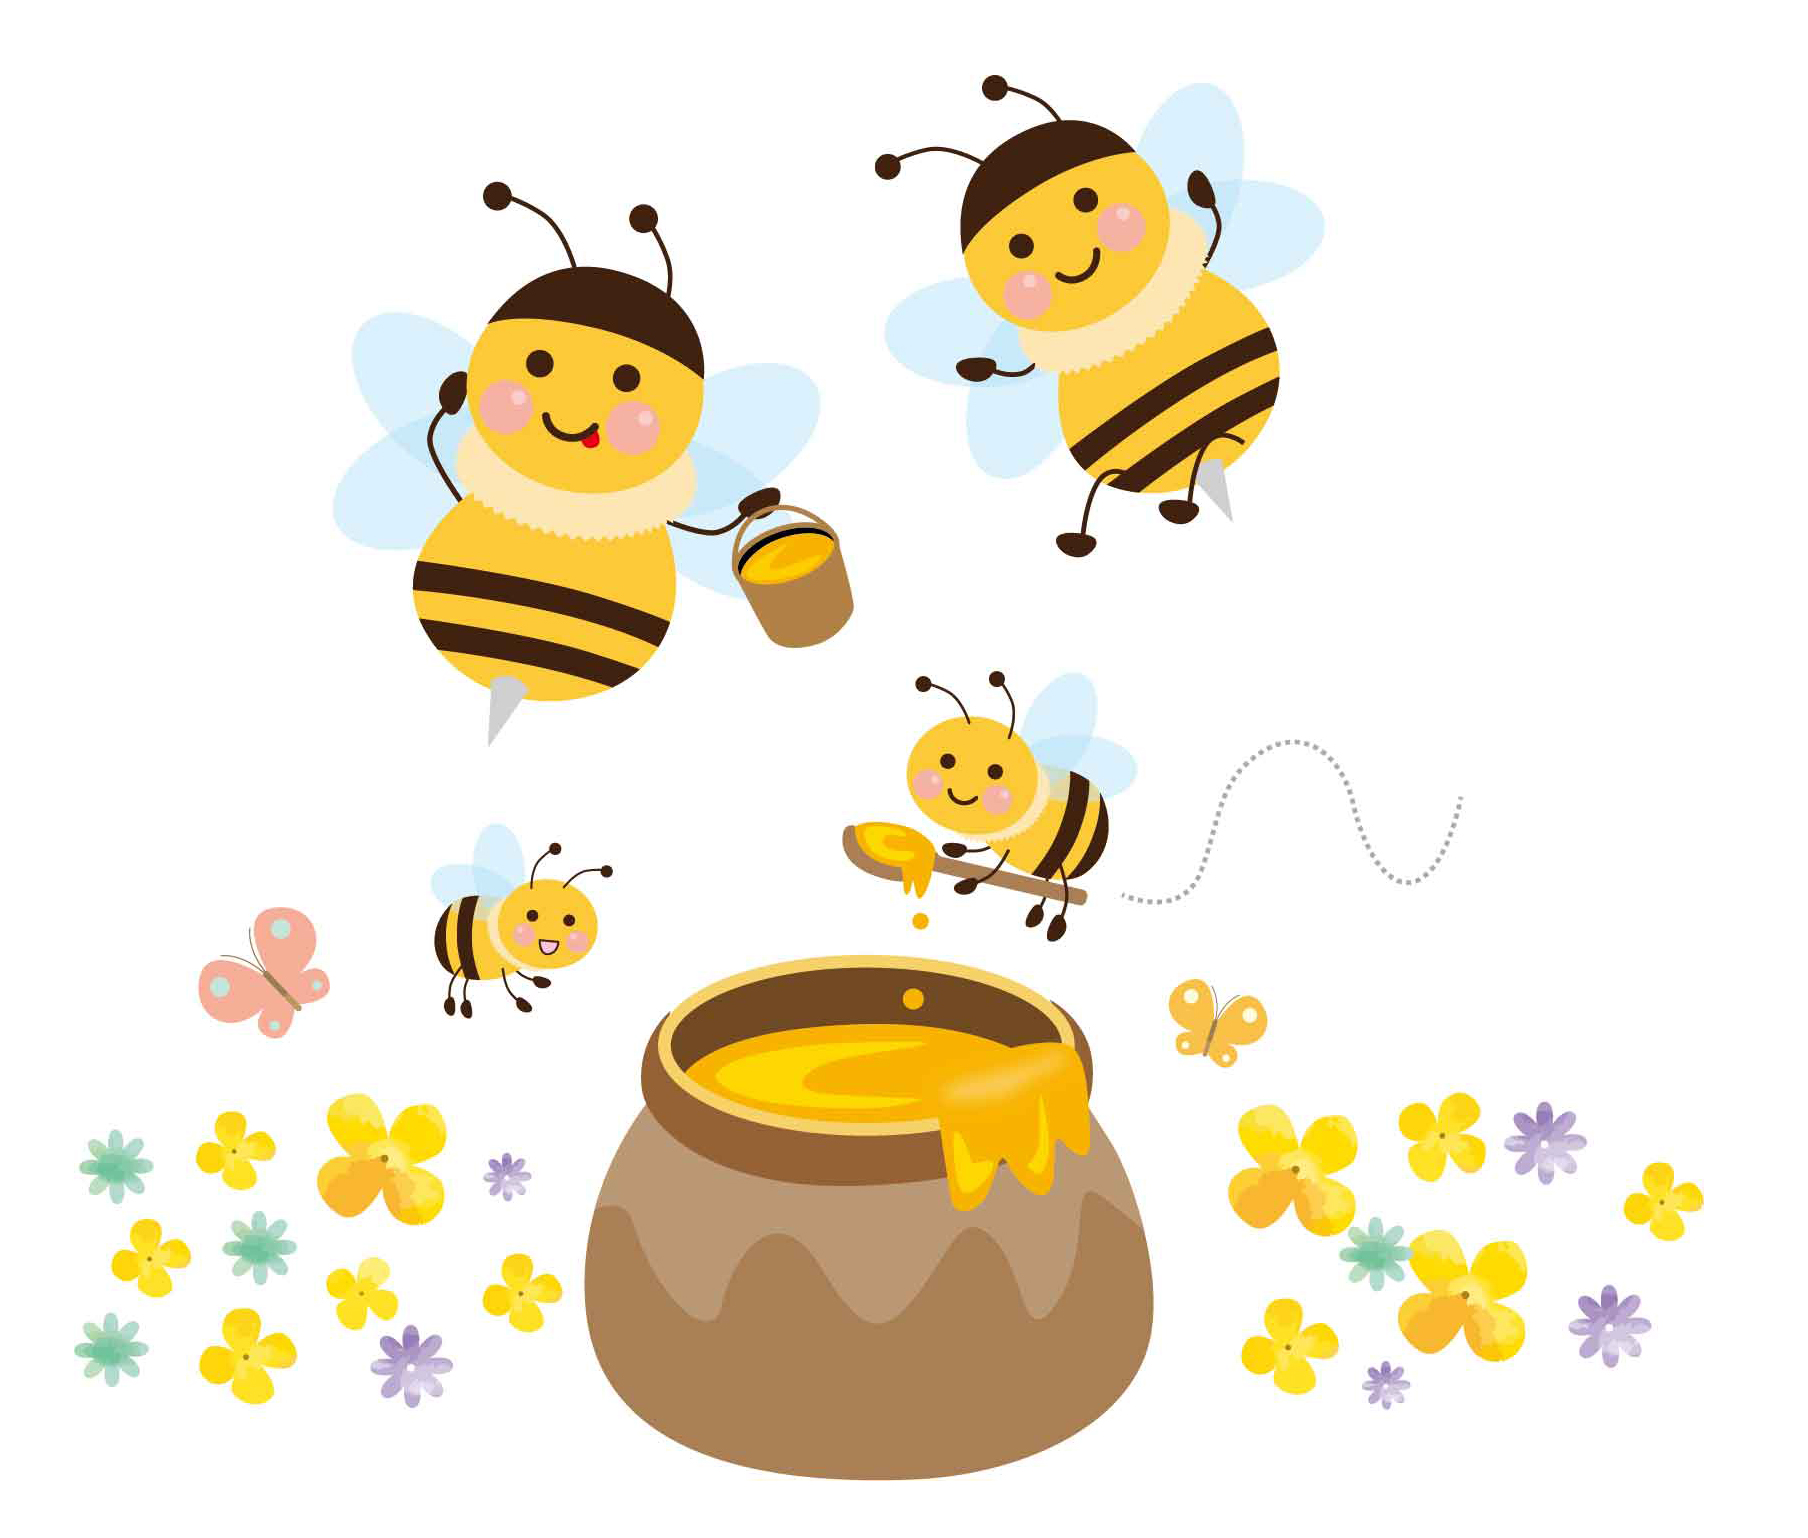 ソレダメ ハチミツレシピ 日本ミツバチの蜂蜜は栄養満点